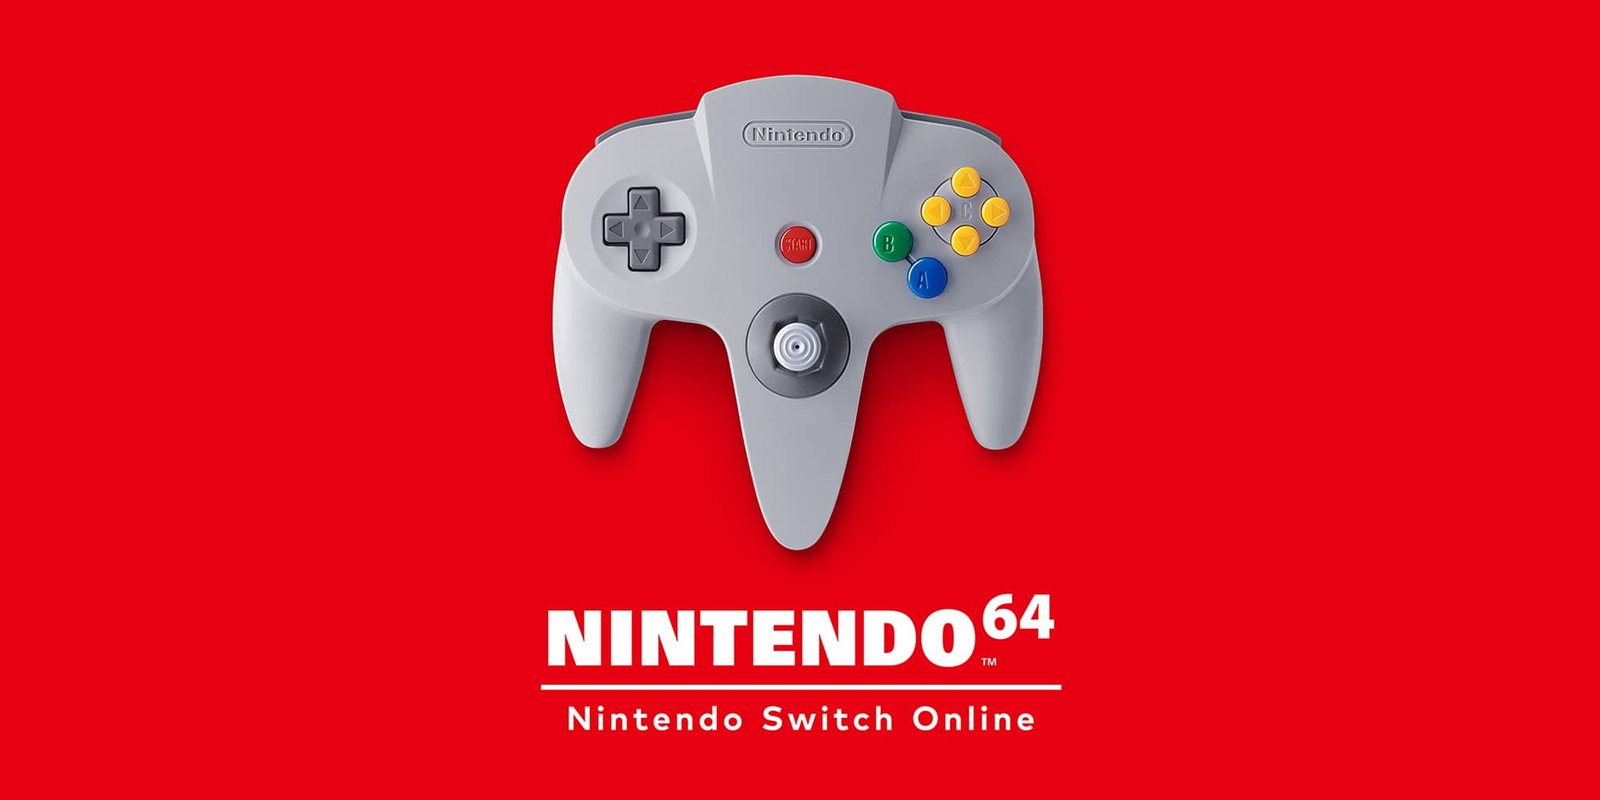 Nintendo lance une application pour les jeux classés “+18” sur la Nintendo 64, exclusivement au Japon.